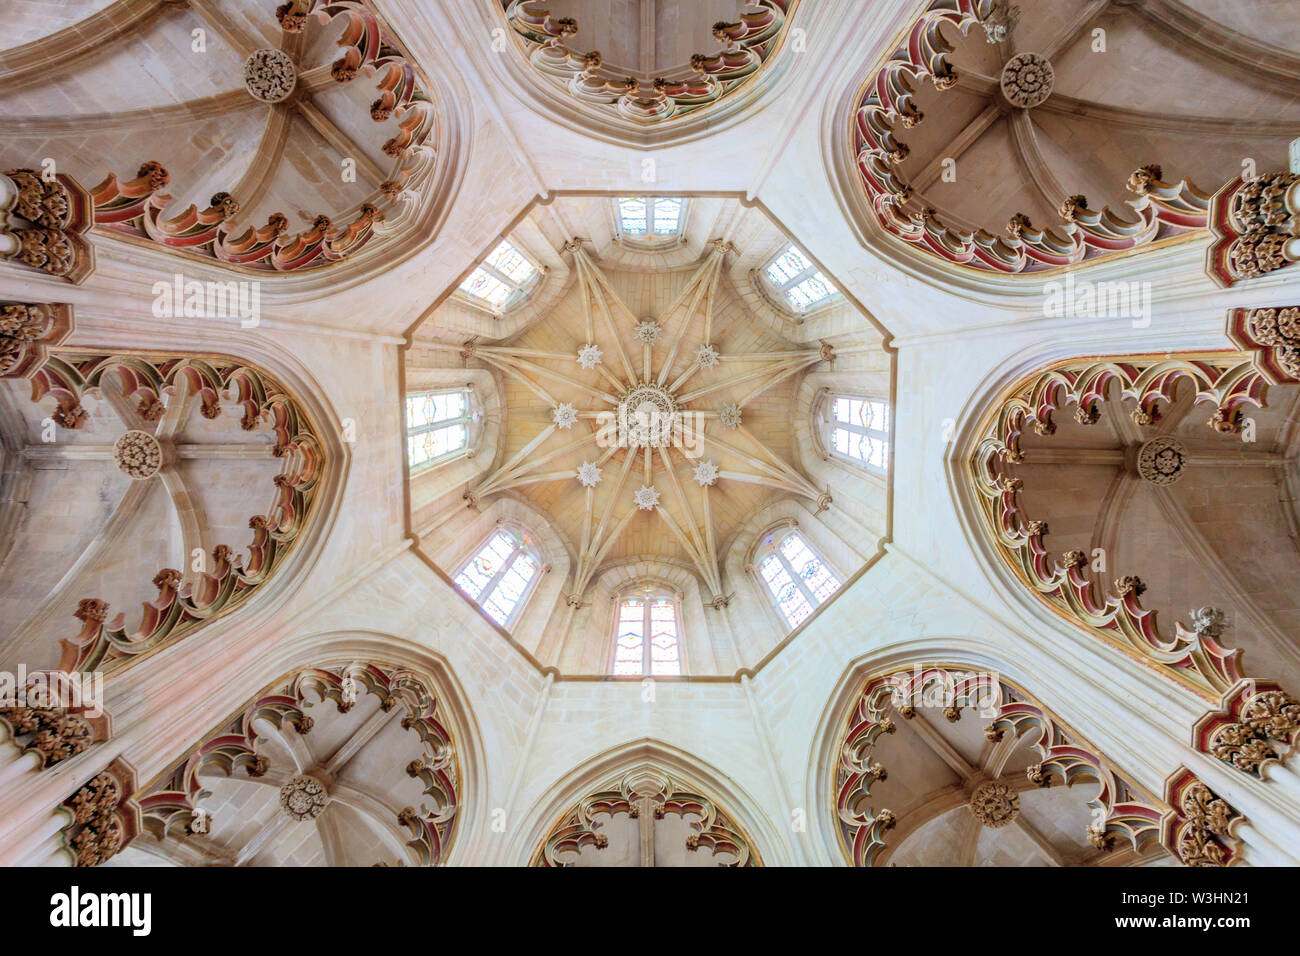 Choir ceiling of Batalha monastery Stock Photo